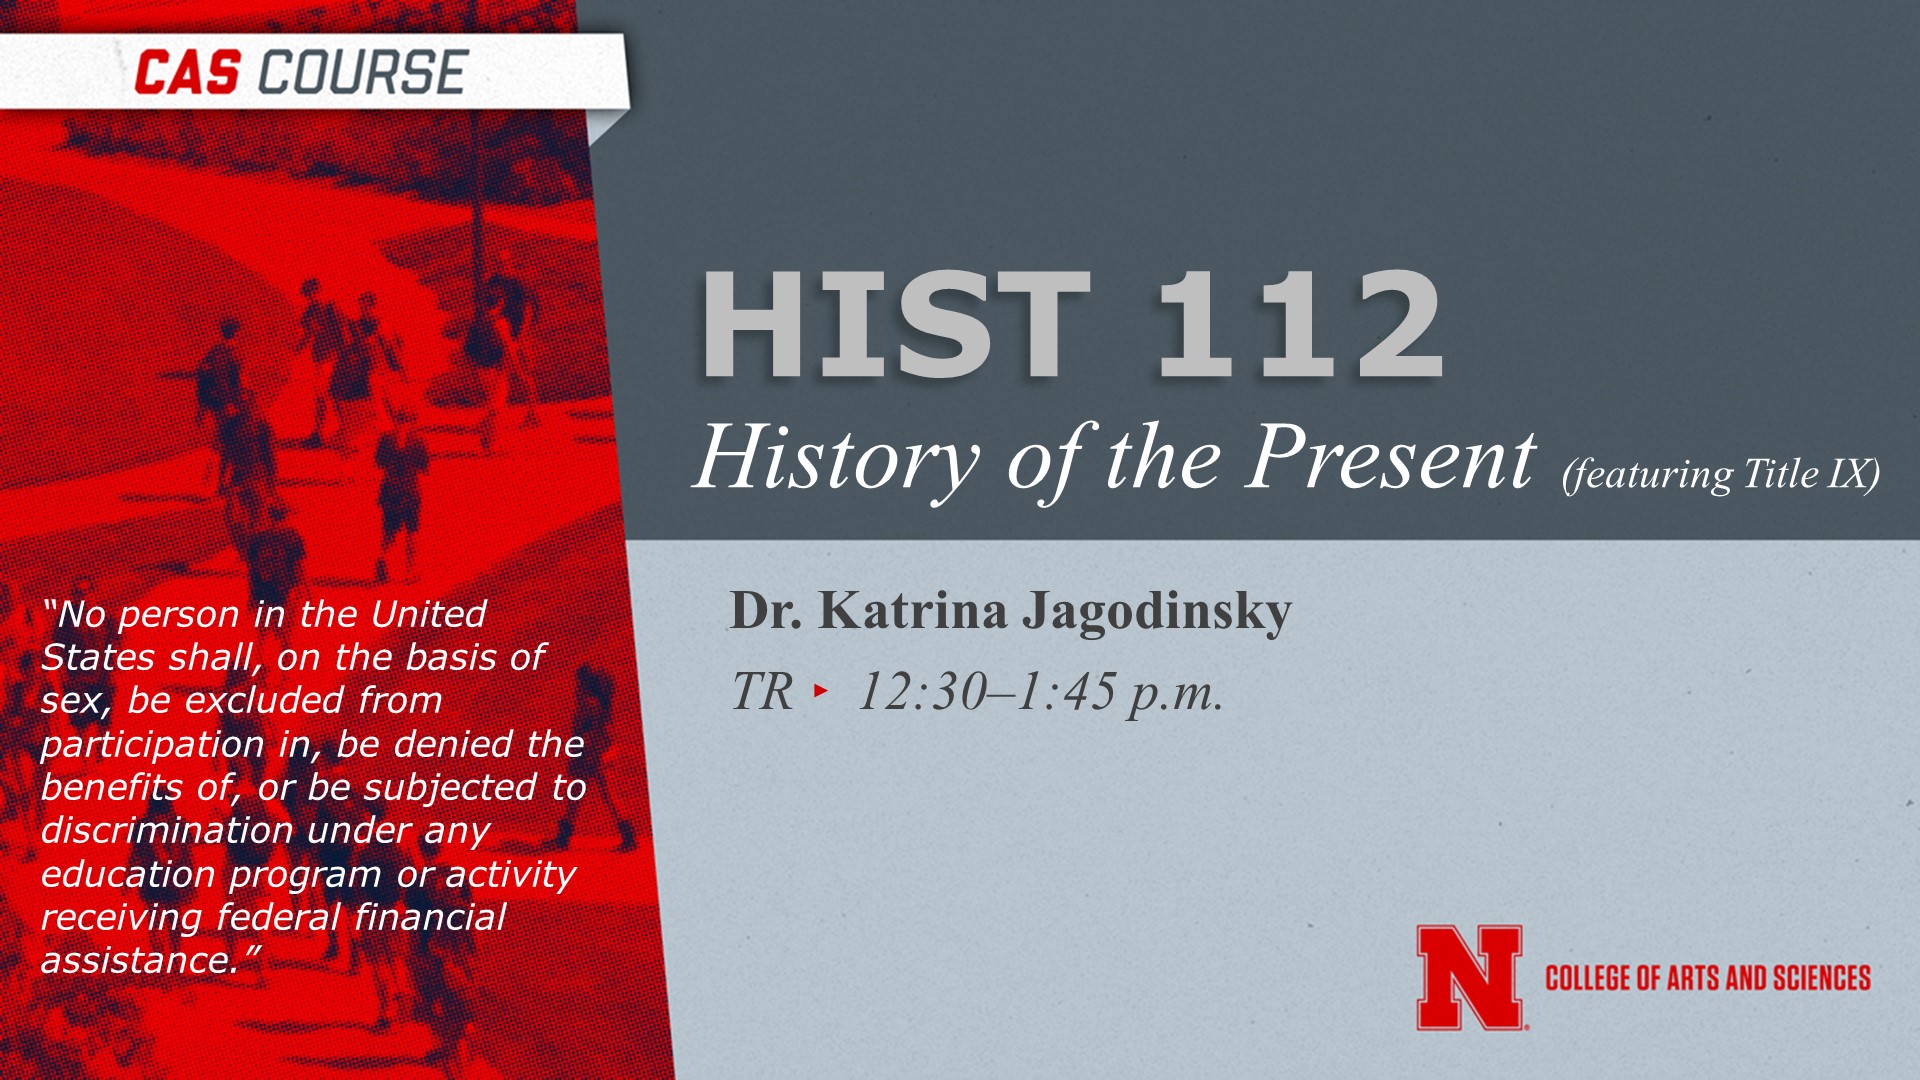 HIST 112 Title IX course